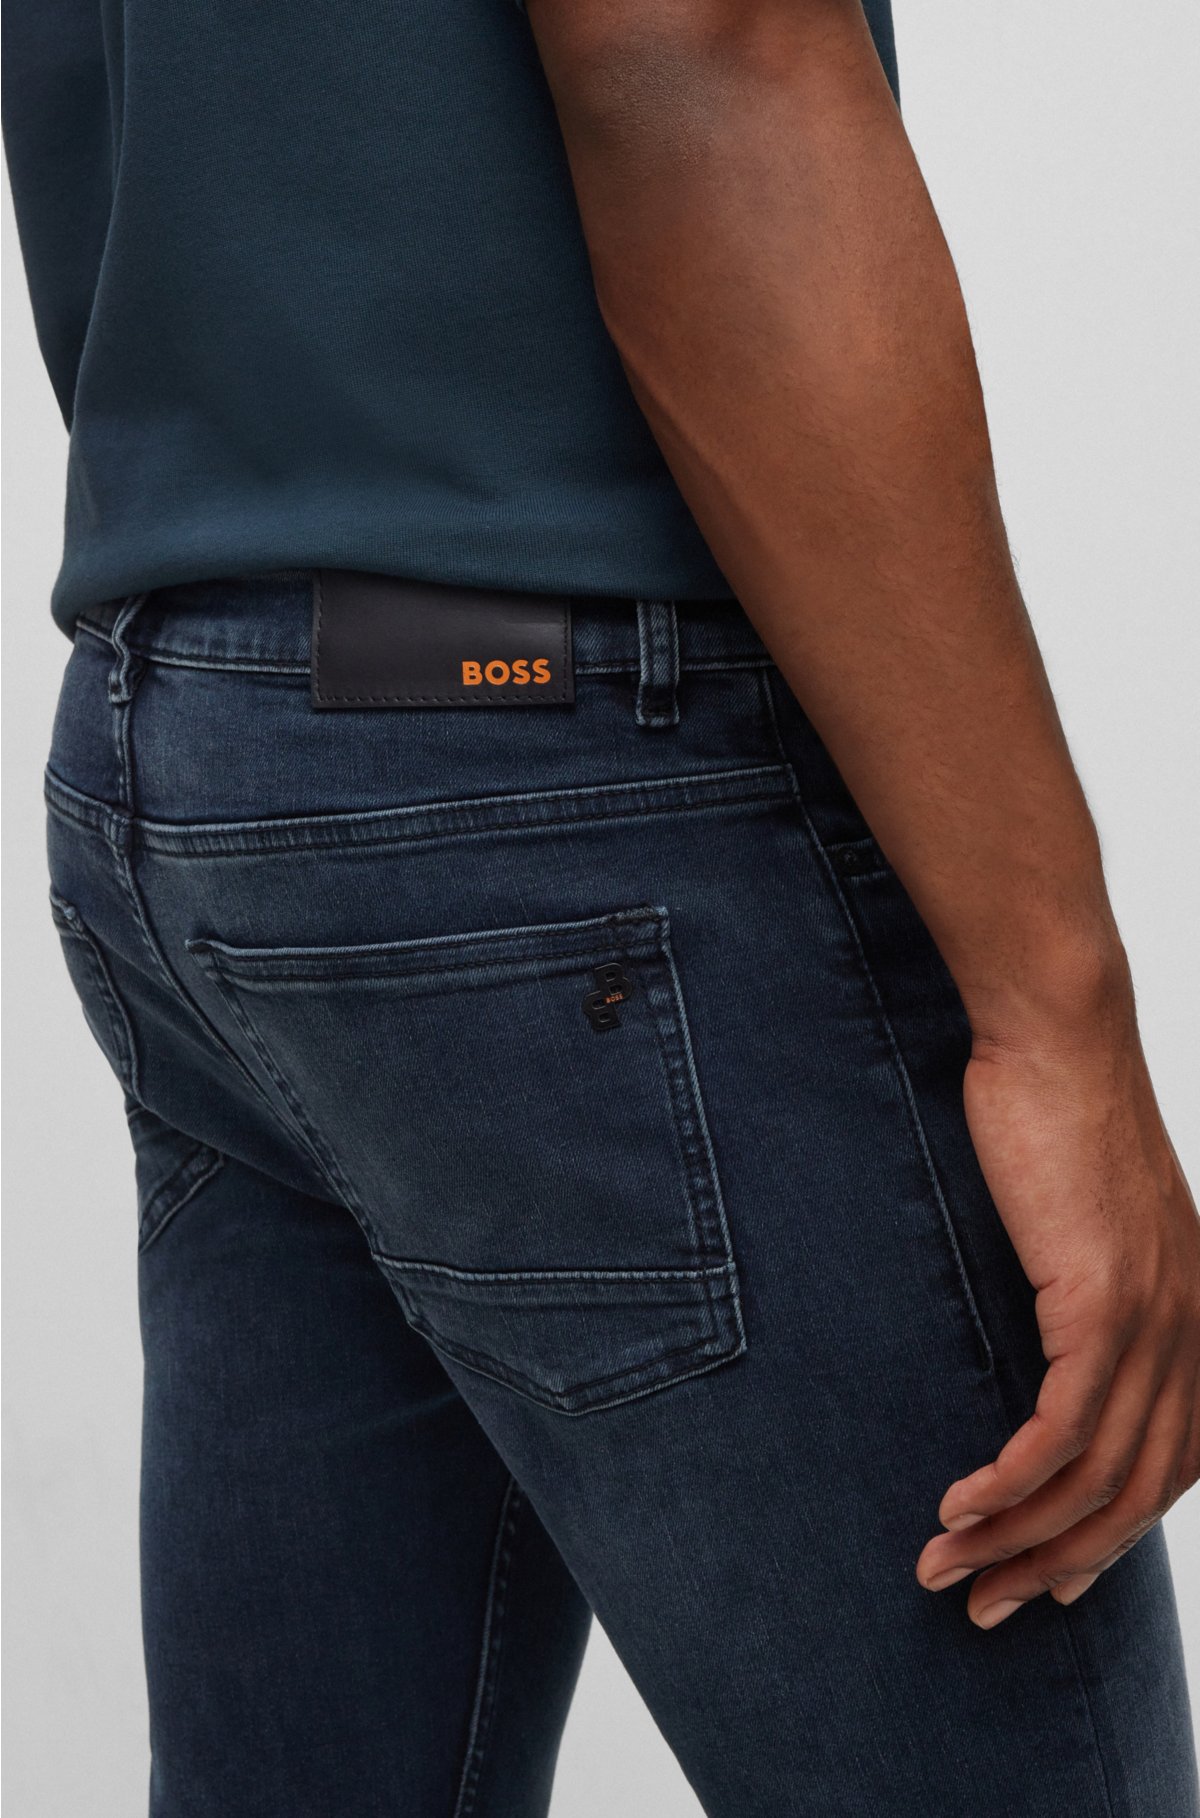 BOSS - dark-blue jeans Slim-fit in super-stretch denim